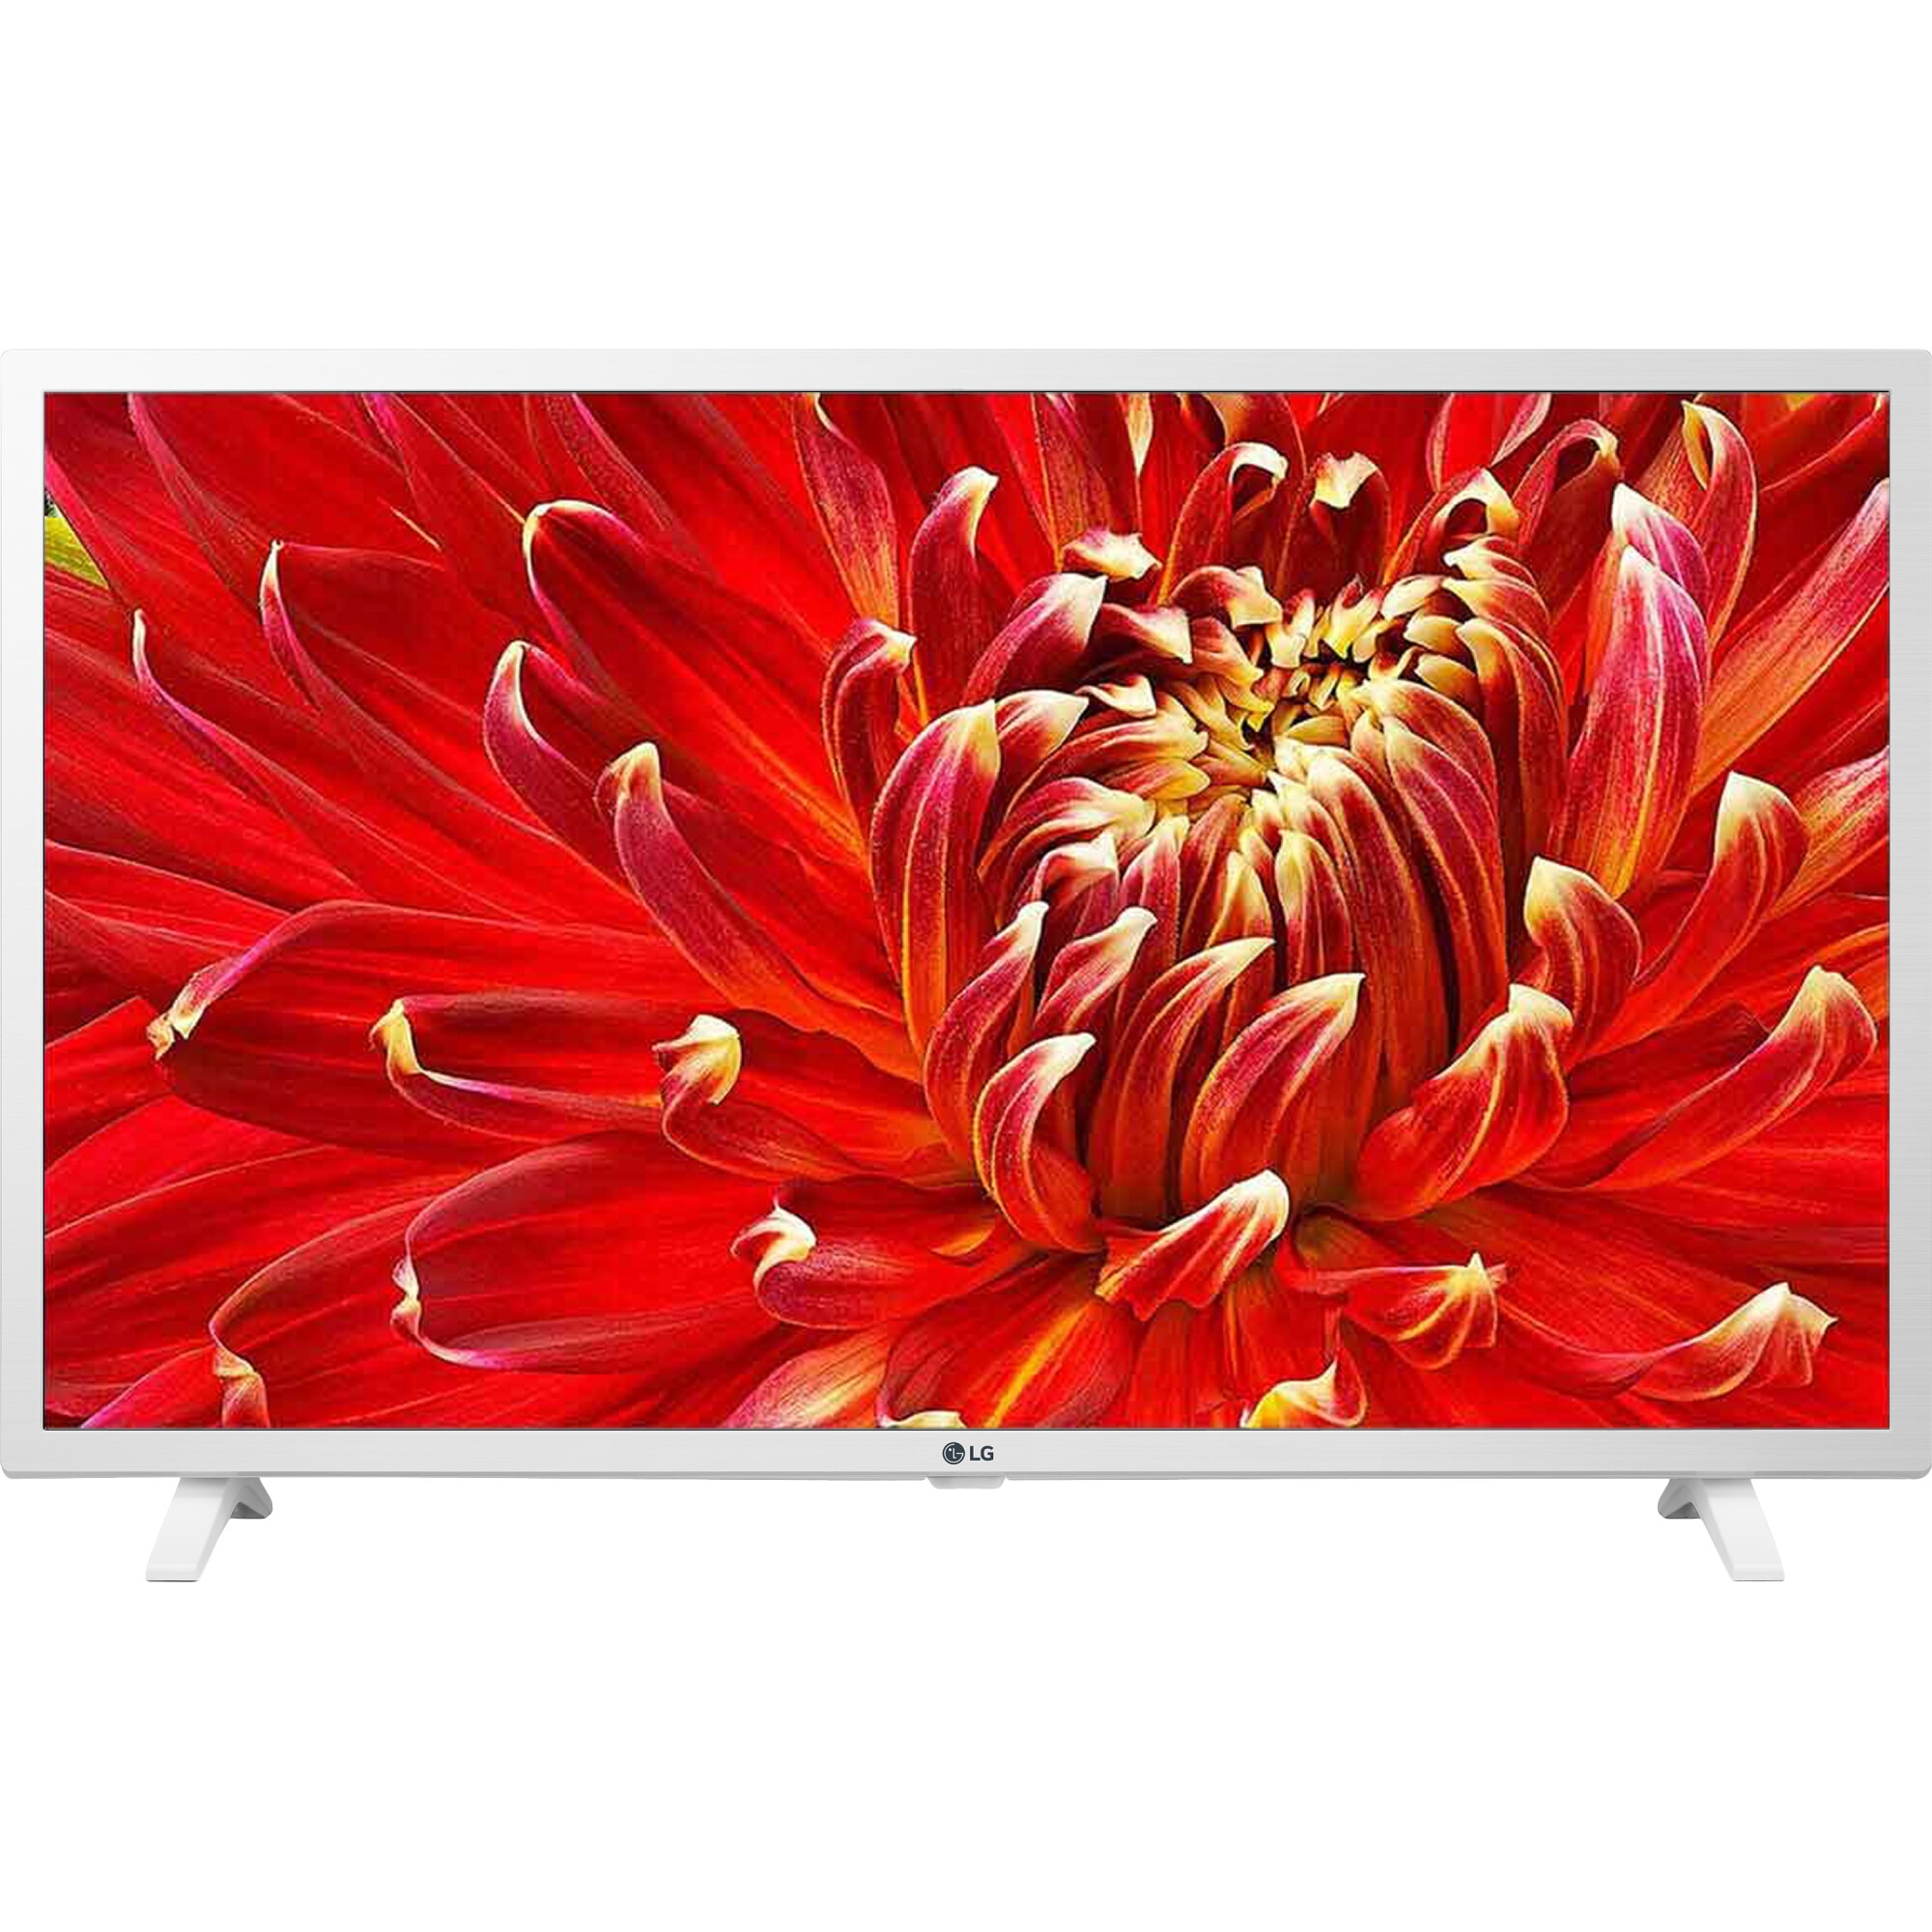 Lg tv цены. Телевизор LG 32lm6350. Телевизор LG 32lm6350 32" (2019). Телевизор LG 32lm6380plc. Телевизор LG 32lm6390 32" (2019).